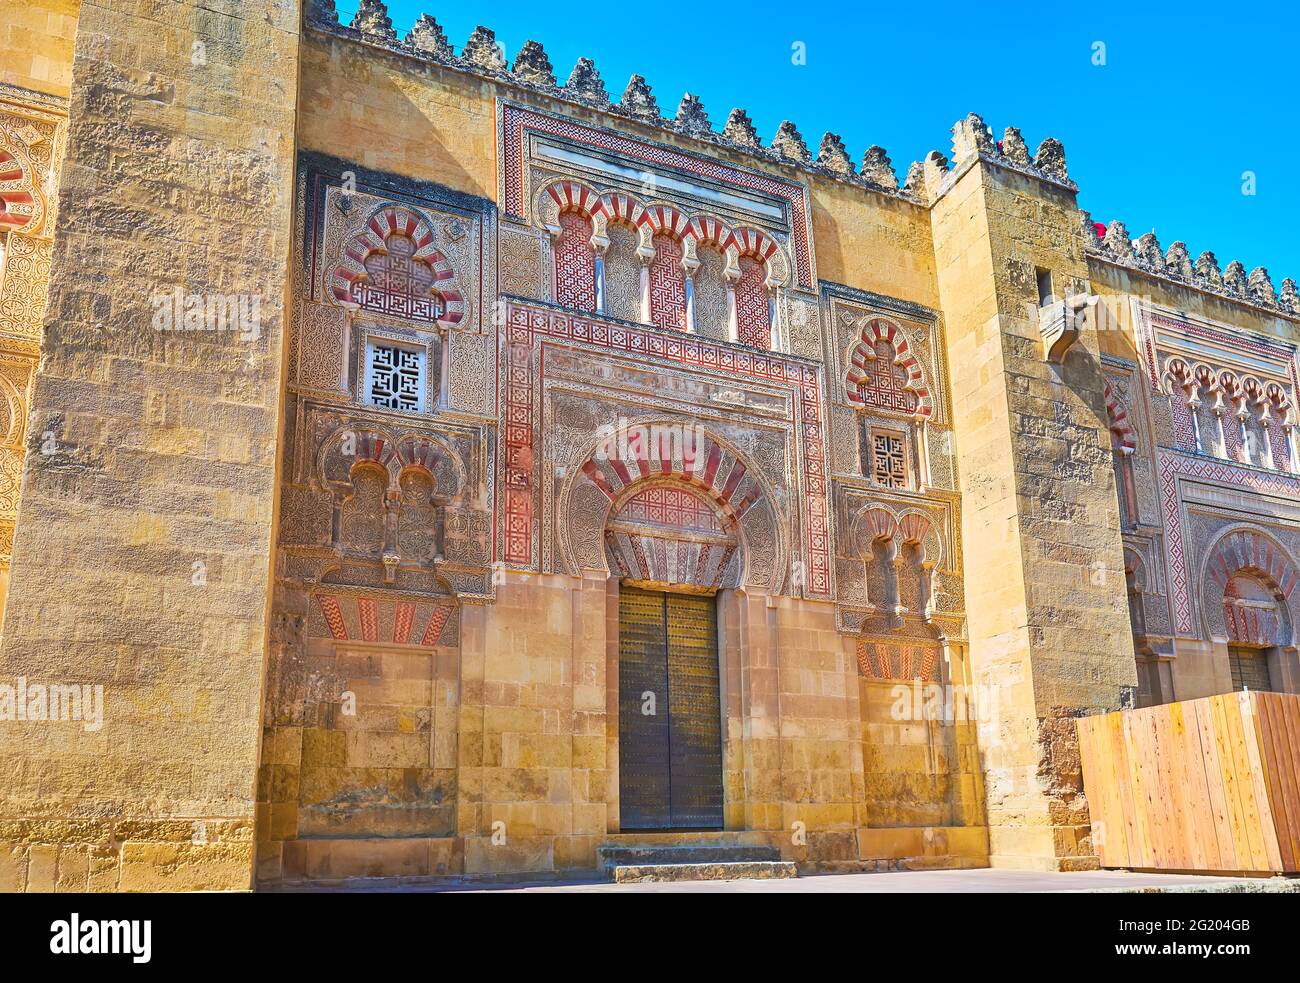 La Puerta de San Nicolas médiévale possède une arche de fer à cheval arabe traditionnelle, des panneaux sculptés en sebka, des motifs incrustés et islamiques, Mezquita, Cordoue, Espagne Banque D'Images